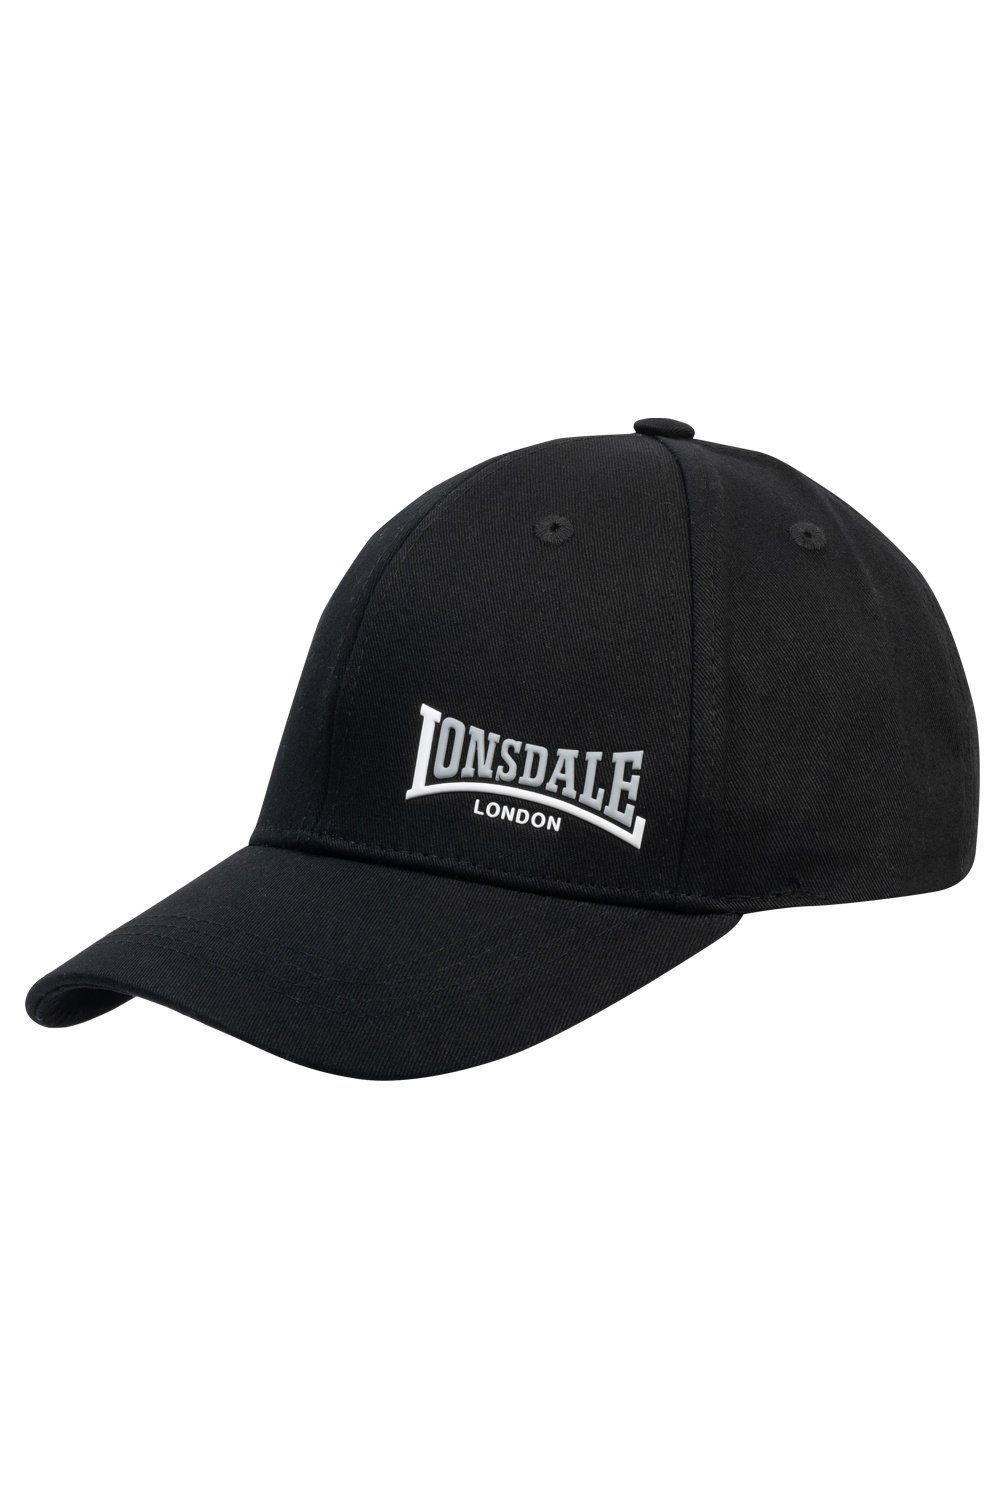 Lonsdale Cap black/white/ash Unisex Cap Lonsdale Baseball Enville